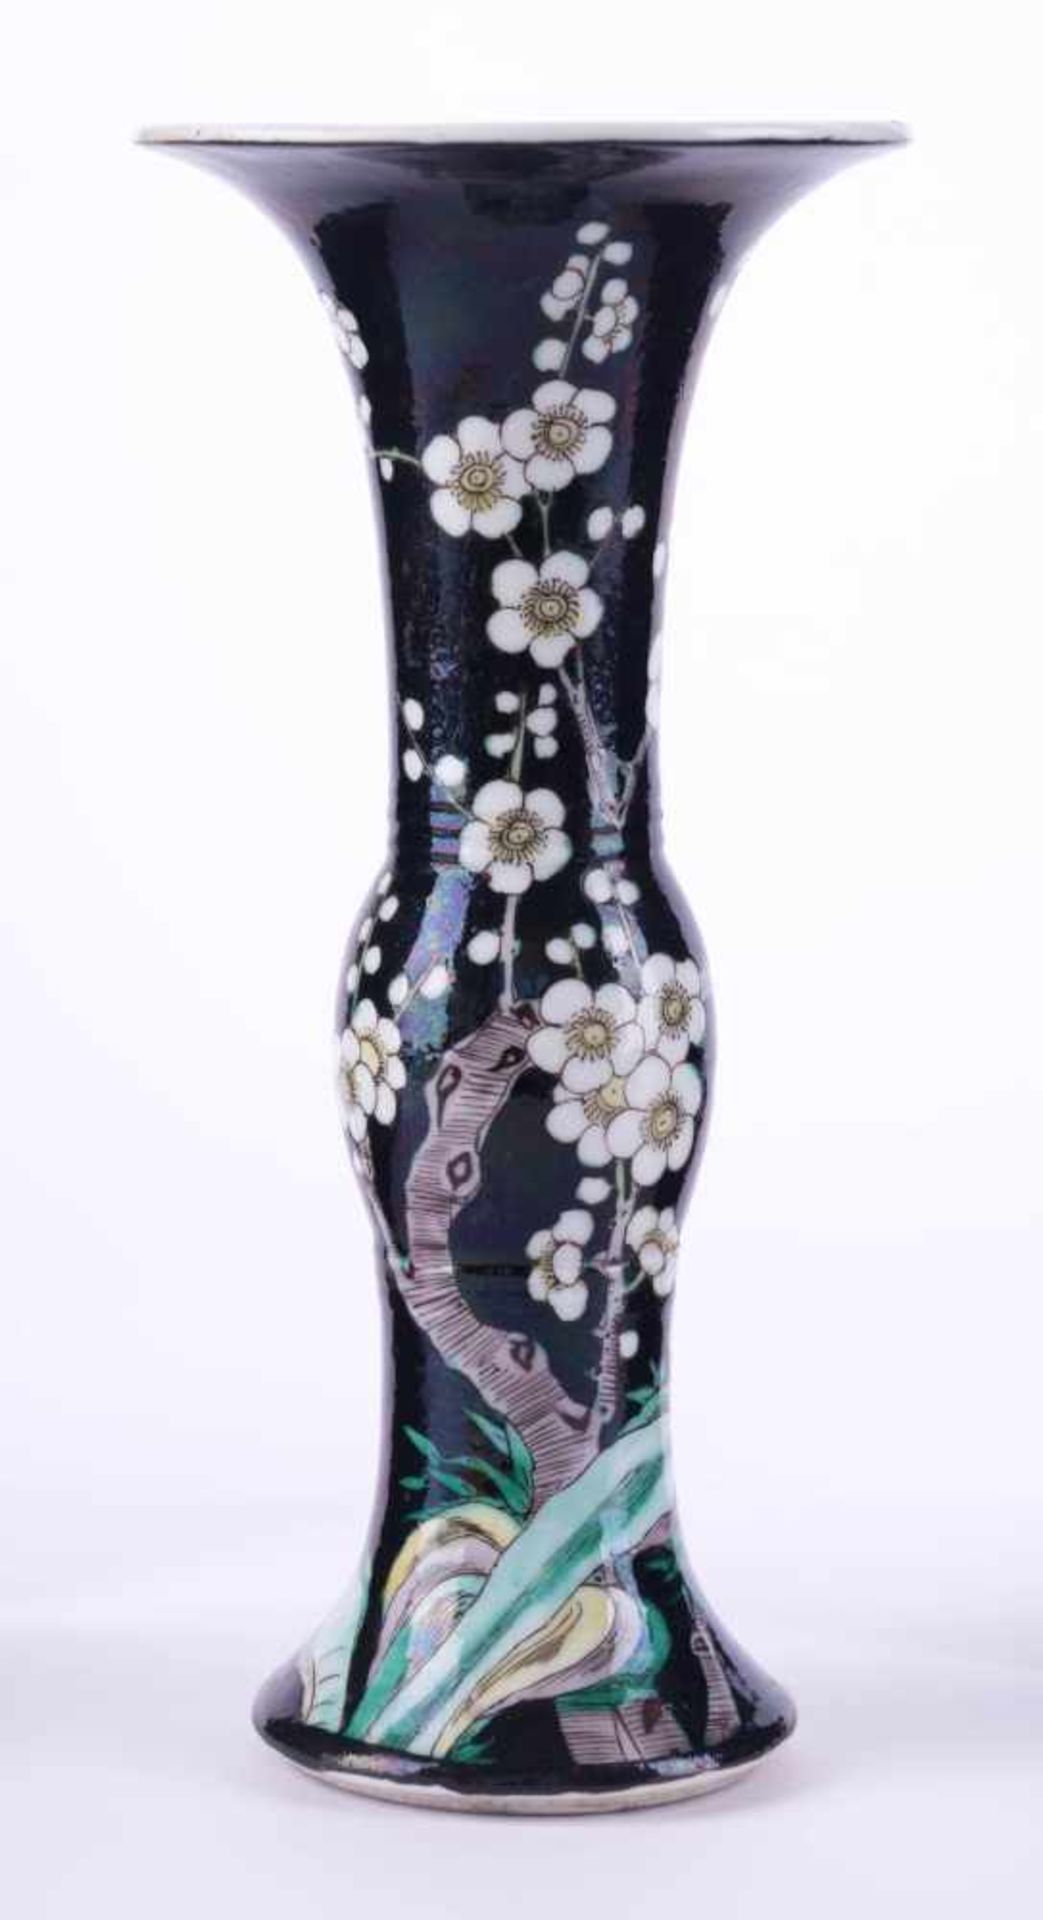 Gu Stangenvase Famille Noir, China 18. Jhd. mit floralem Dekor staffiert, blaue Doppelring-Marke, H: